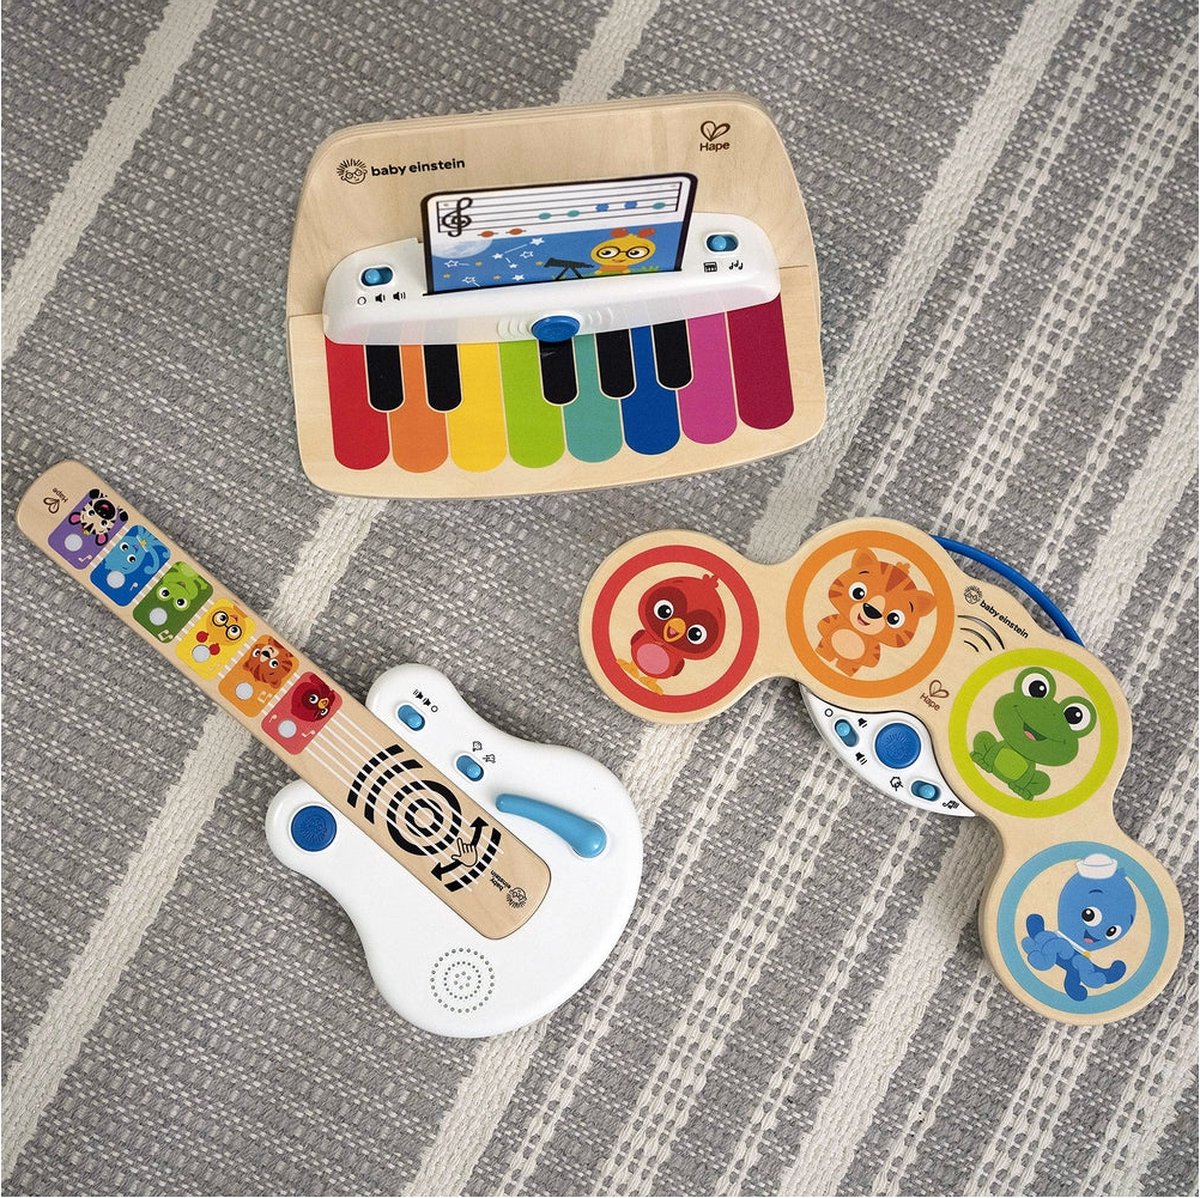 Instrument de musique - Batterie pour bébé - Magic Touch Baby Einstein -  Hape Toys